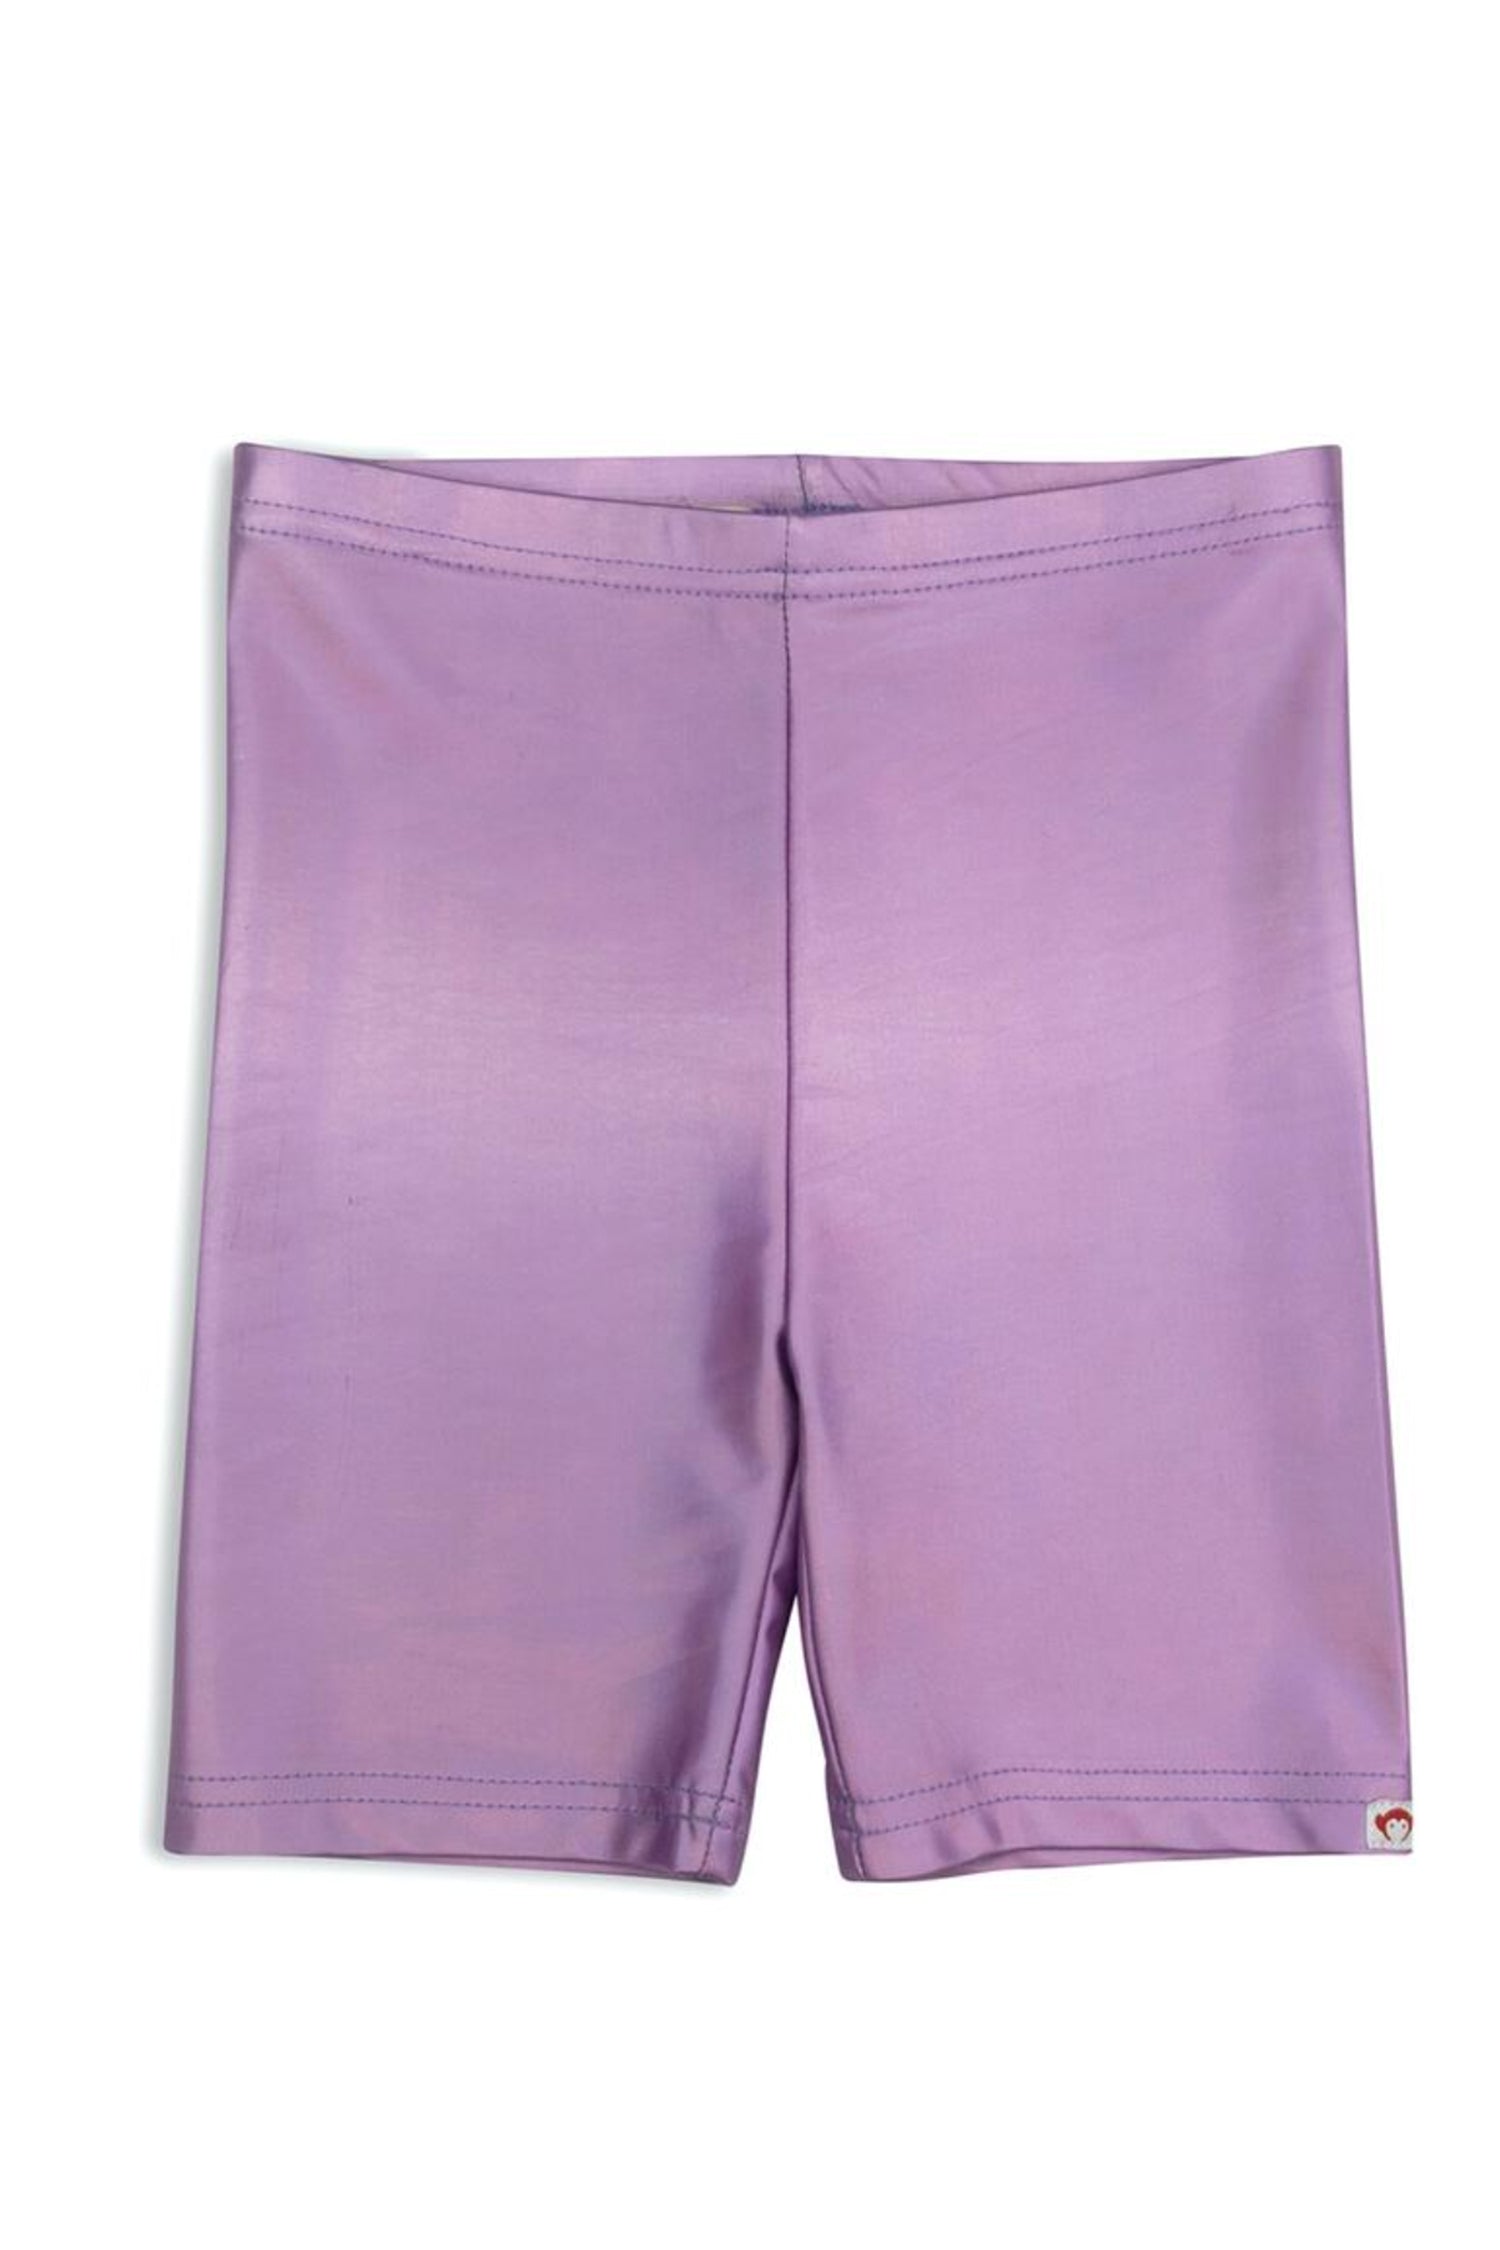 Metallic Pink Bike Shorts – Me & Kay